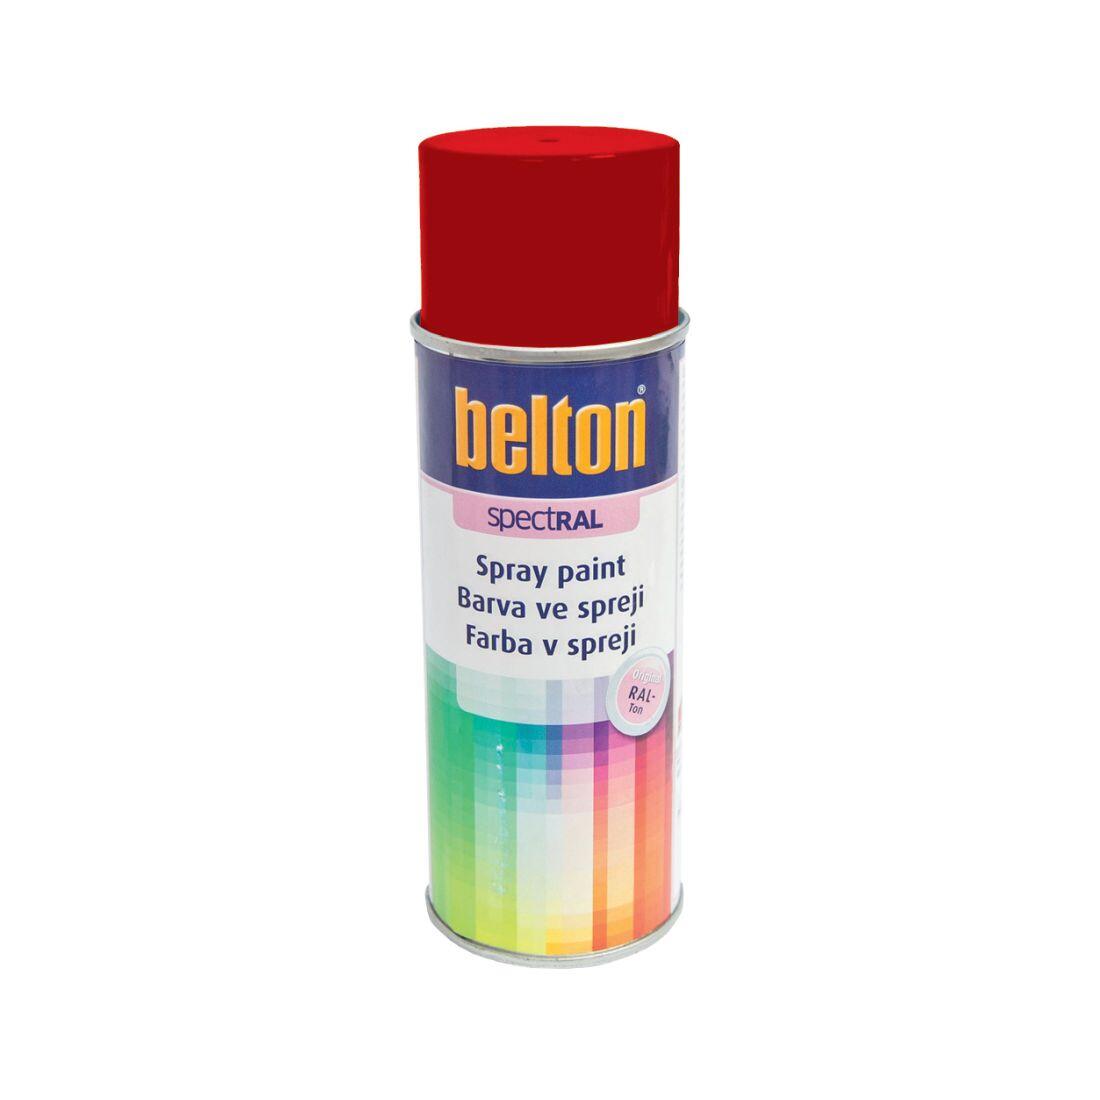 barva ve spreji BELTON RAL 3000, 400ml ČRV ohnivě lesklá 0.31 Kg MAXMIX Sklad14 825129 4